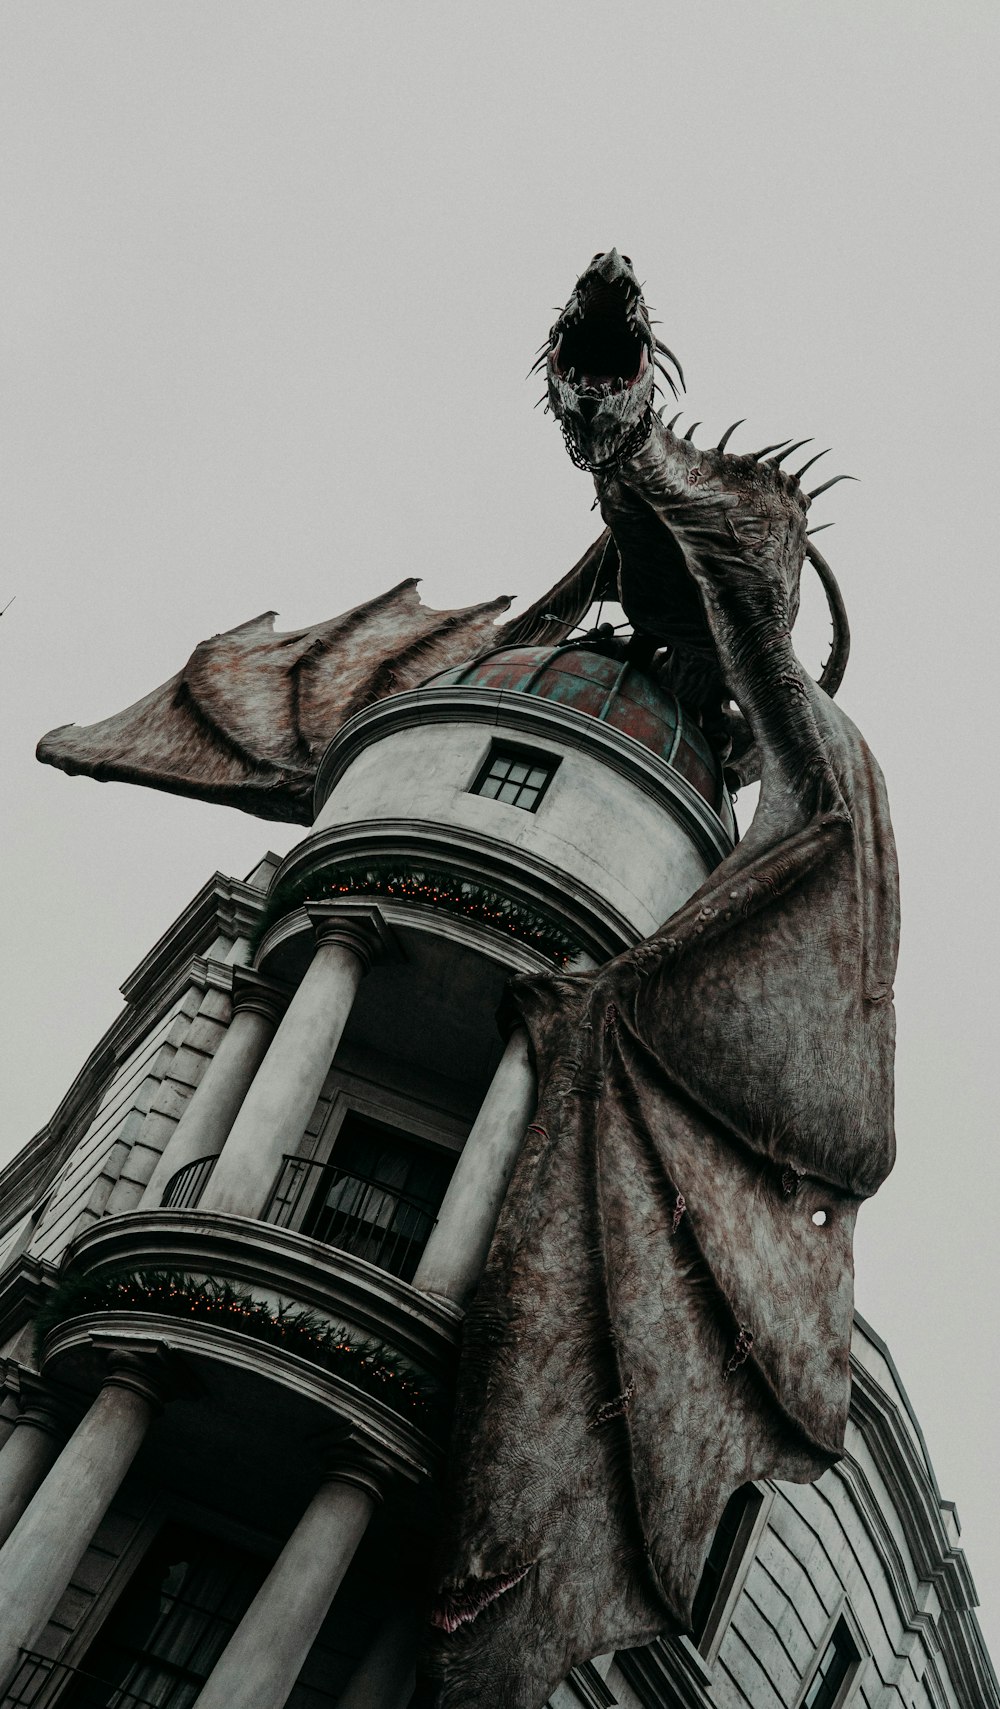 foto di messa a fuoco superficiale del drago sull'edificio grigio